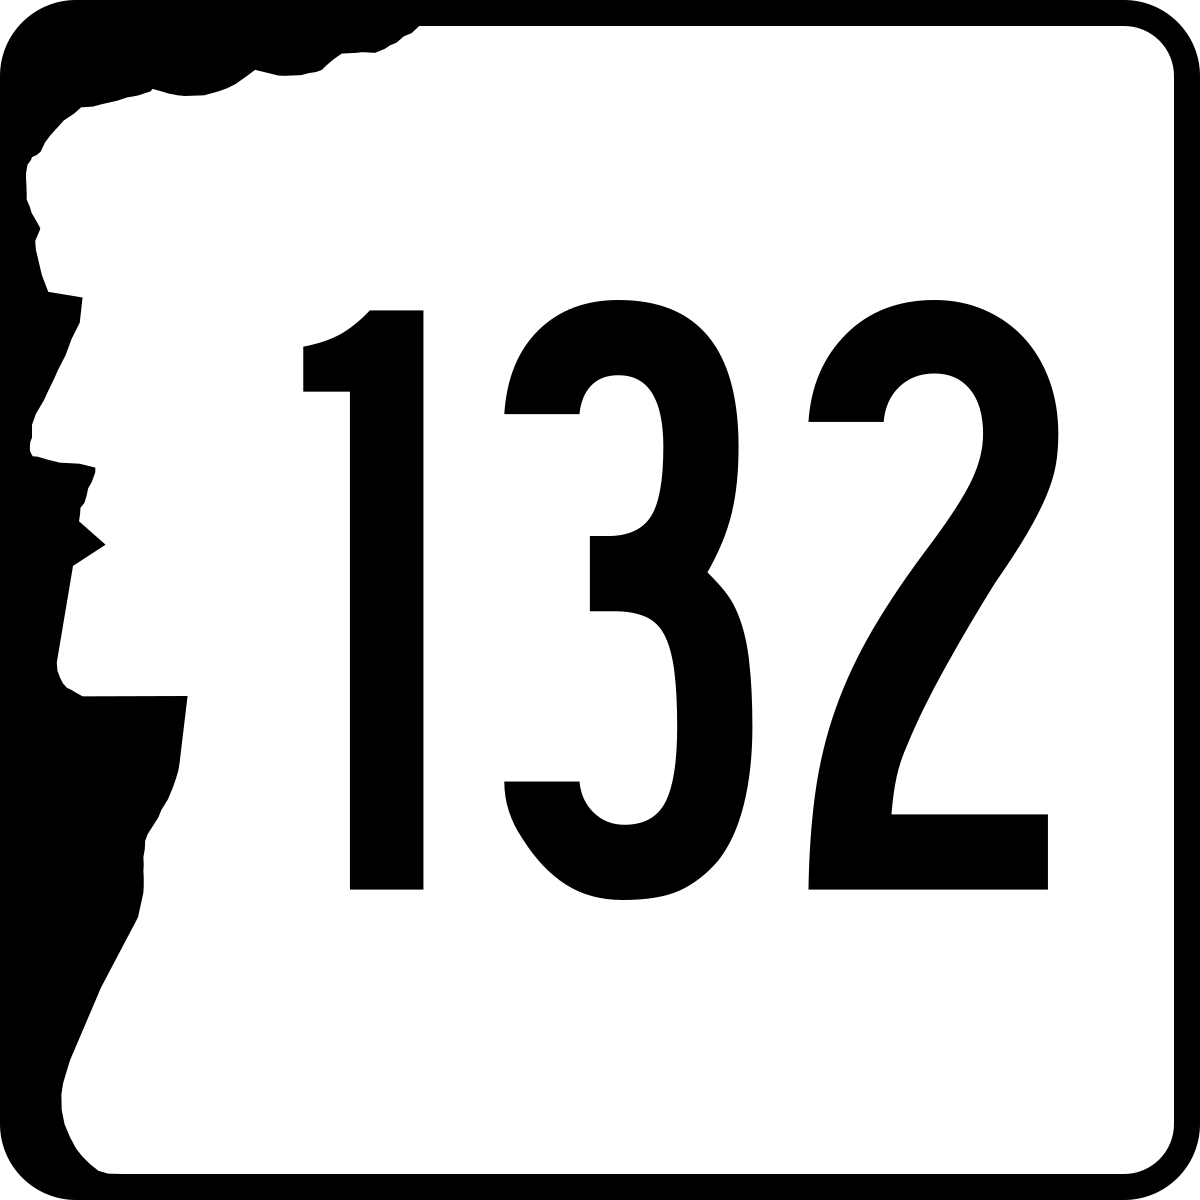 New Hampshire Route 132 - Wikipedia